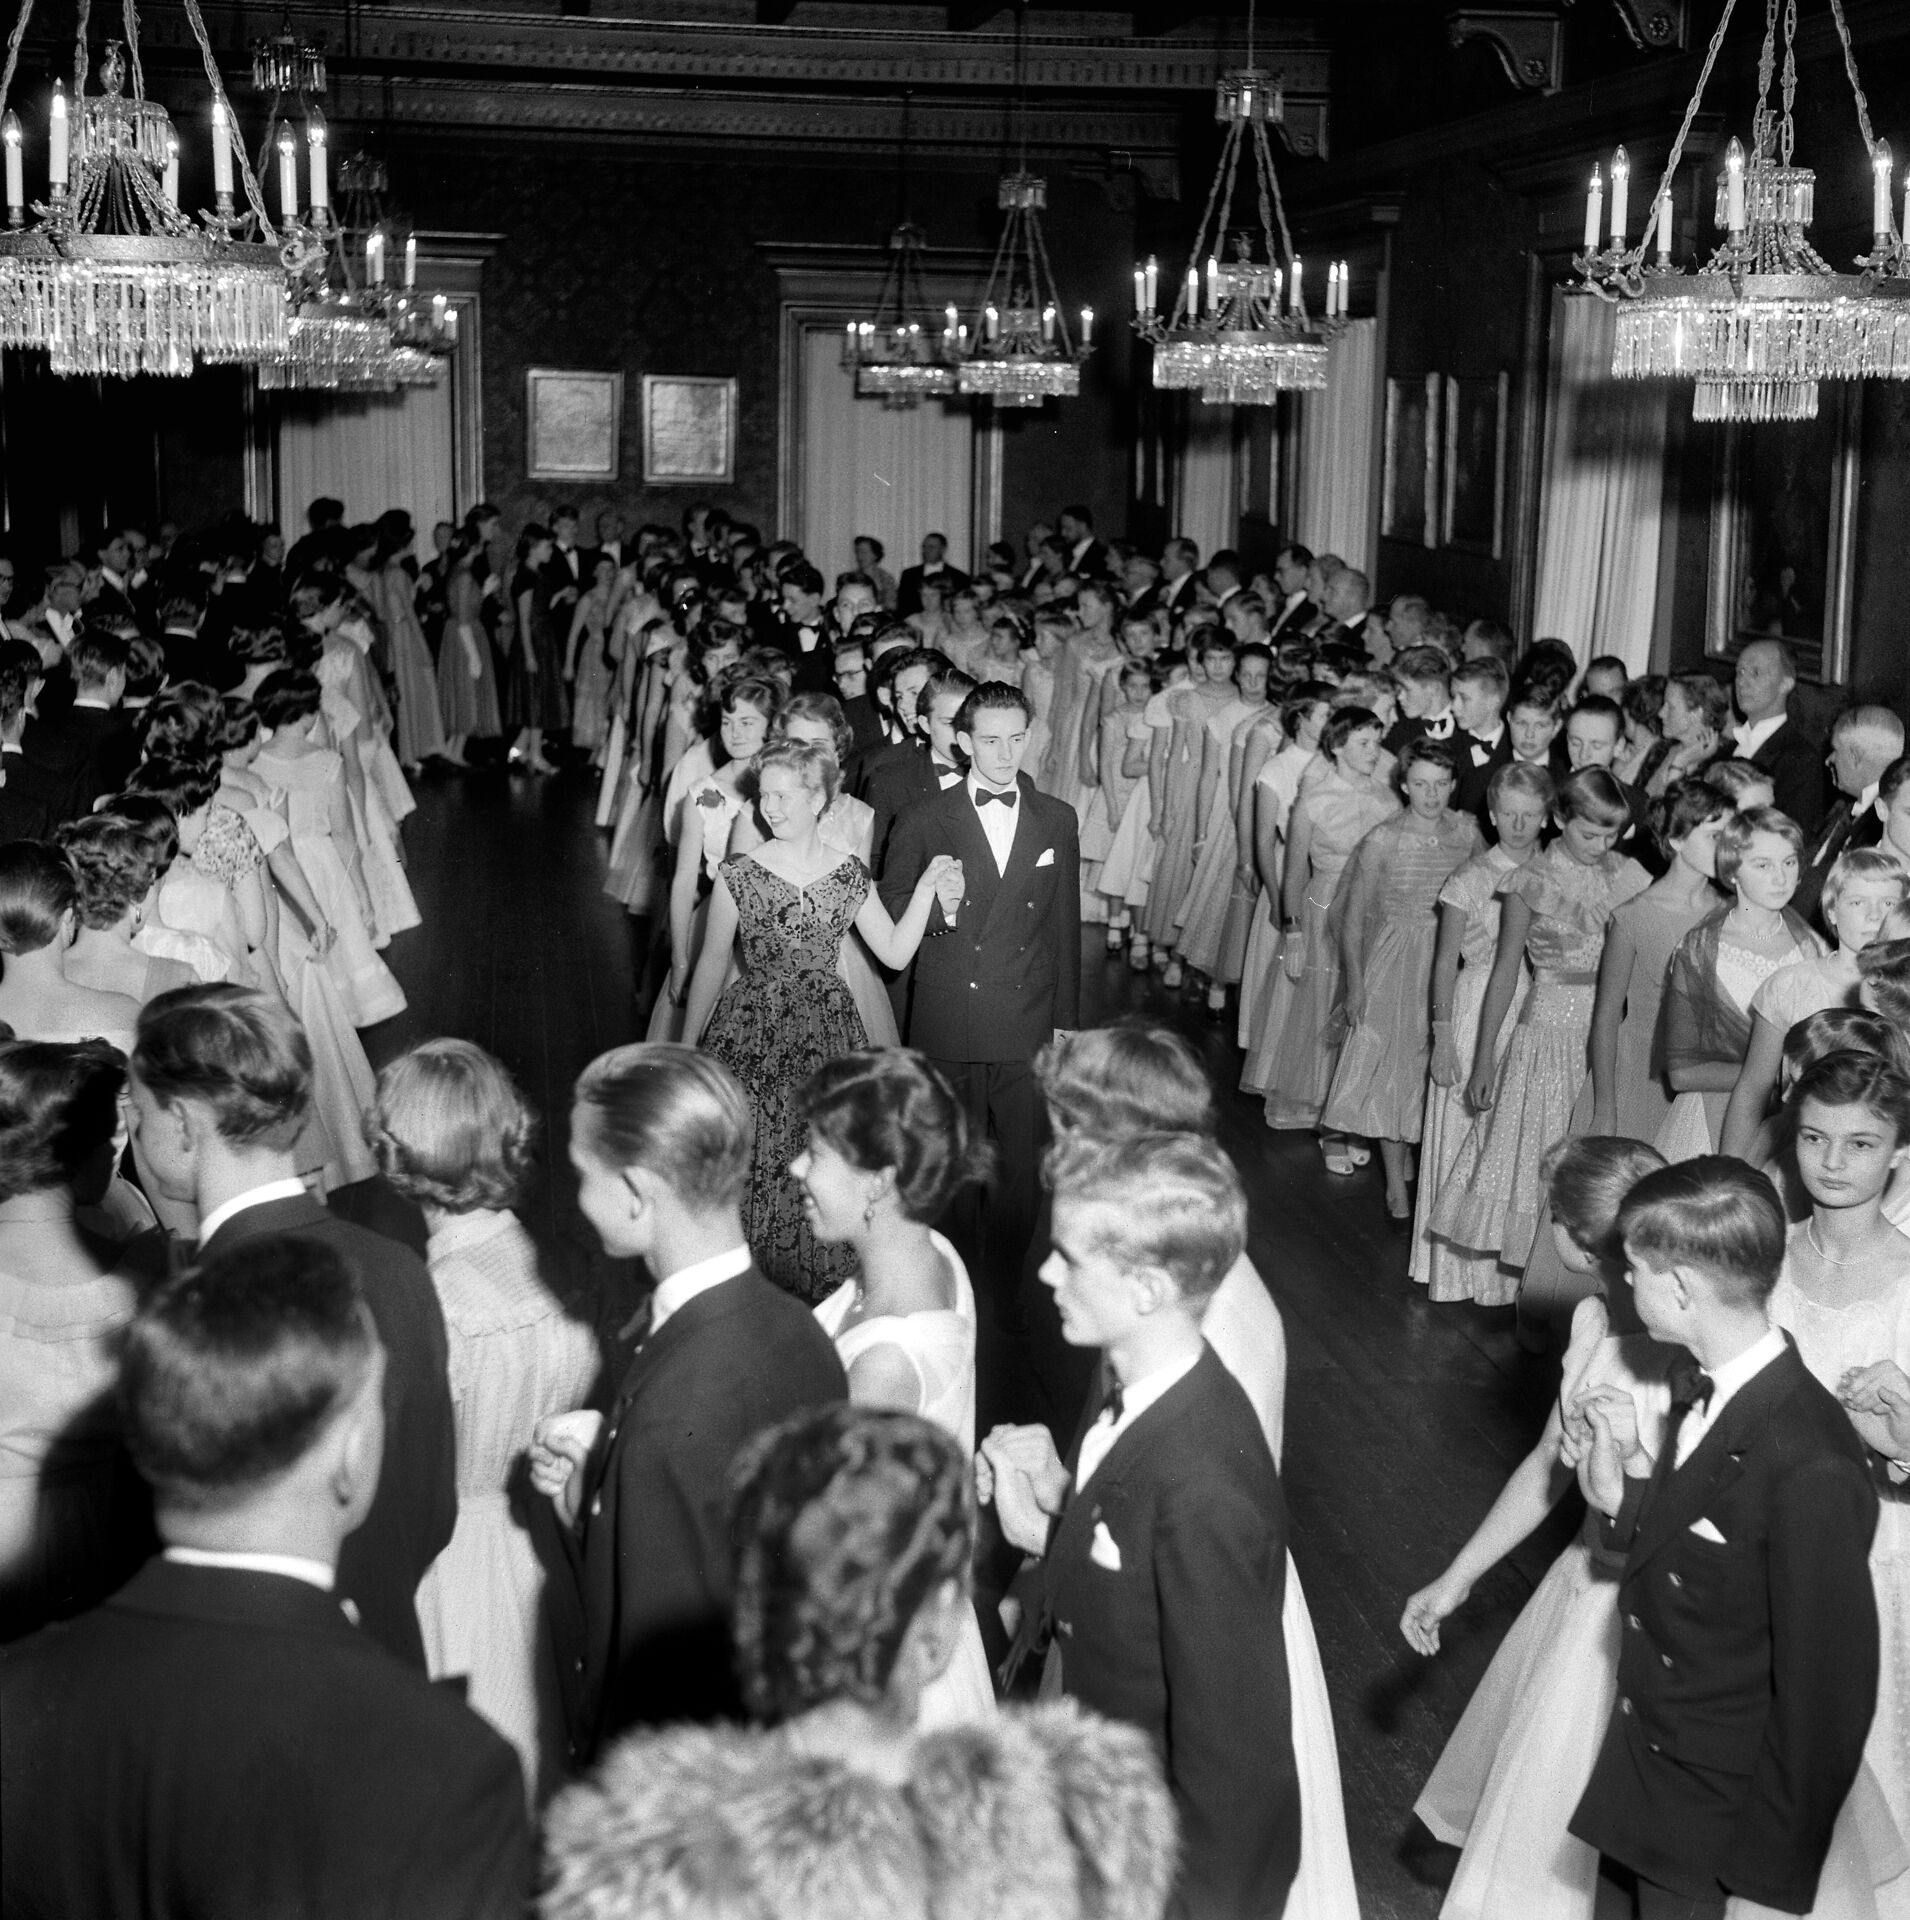 Herlufsholm Skoles"diple"med inviterede"dansemus"marcherer ind i skolens festsal til Trollebal lørdag den 14. januar 1956. Den dag hyldes skolens stiftere, admiral Herluf Trolle og hans hustru, Birgitte Gøye.
